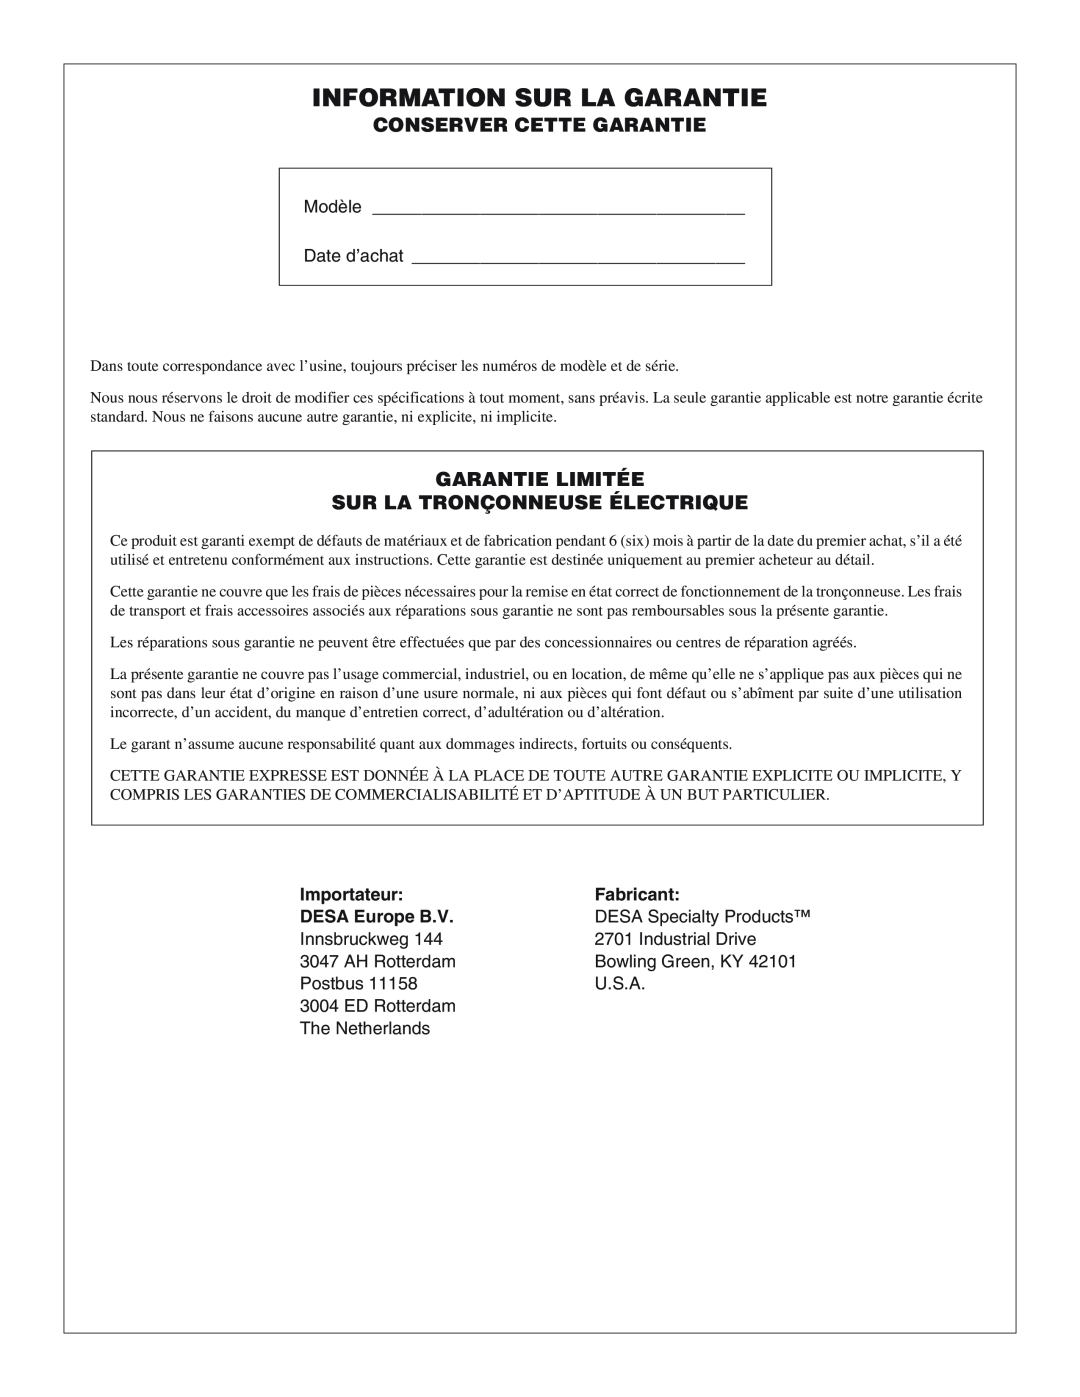 Desa 100271-01 Information Sur La Garantie, Conserver Cette Garantie, Garantie Limitée Sur La Tronçonneuse Électrique 